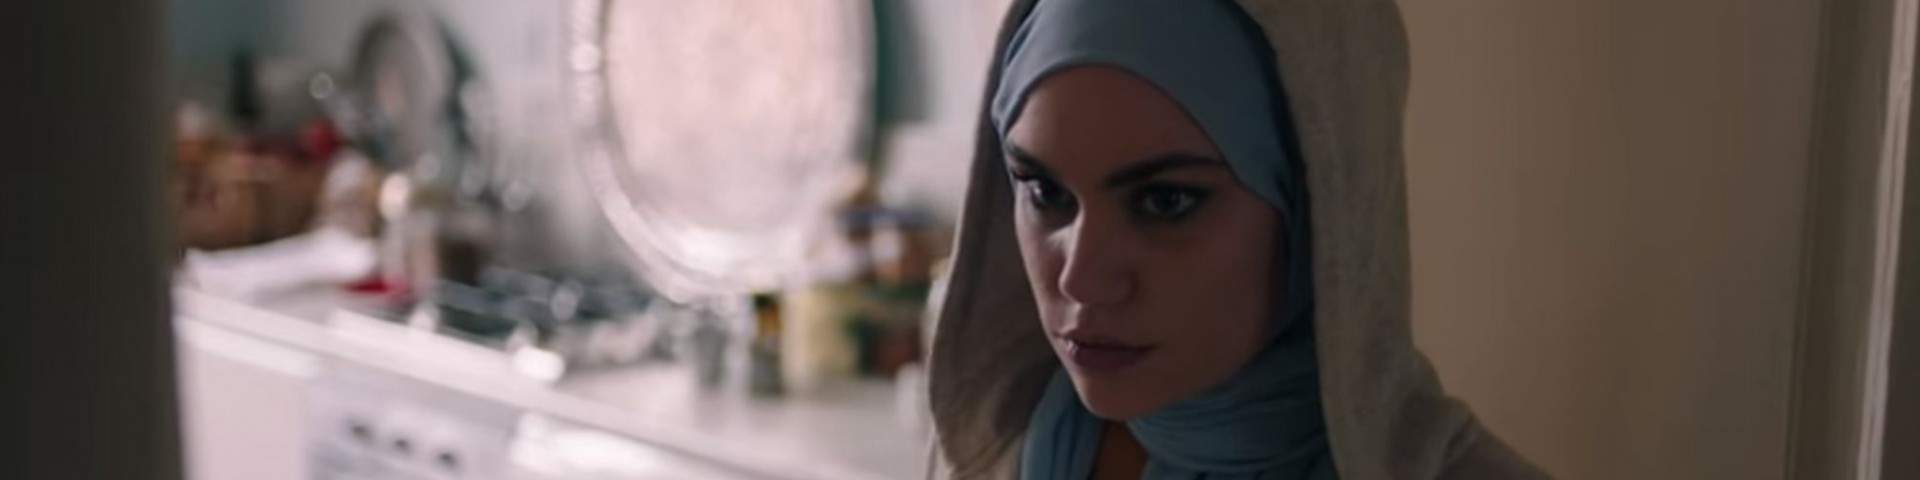 Trailer Skam Italia 4 su Netflix: colonna sonora e attori (Video)